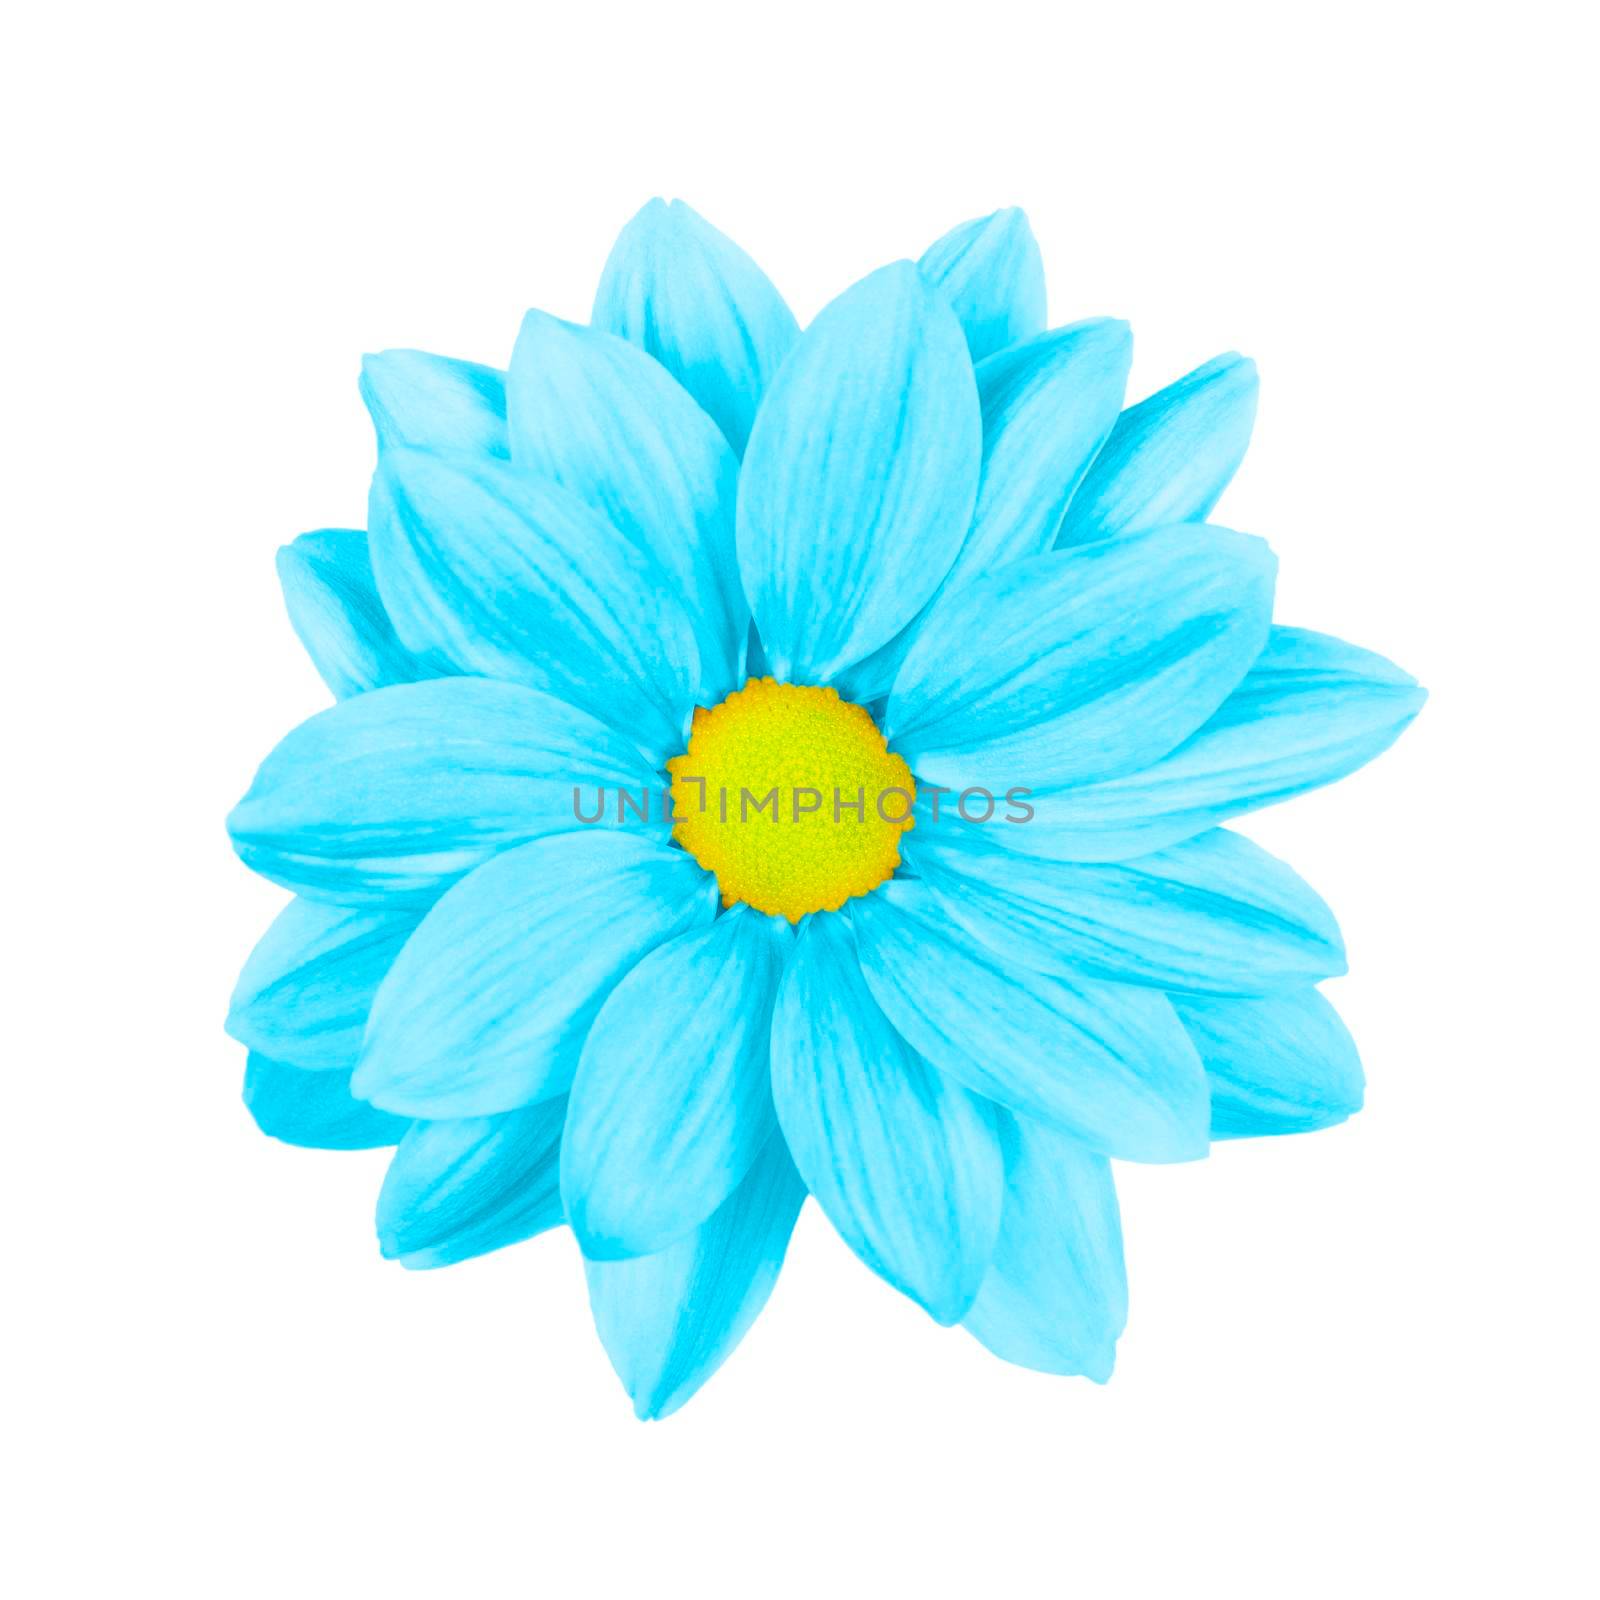 Light blue daisy, chamomile or chrysanthemum macro photo isolated on white background. by esvetleishaya